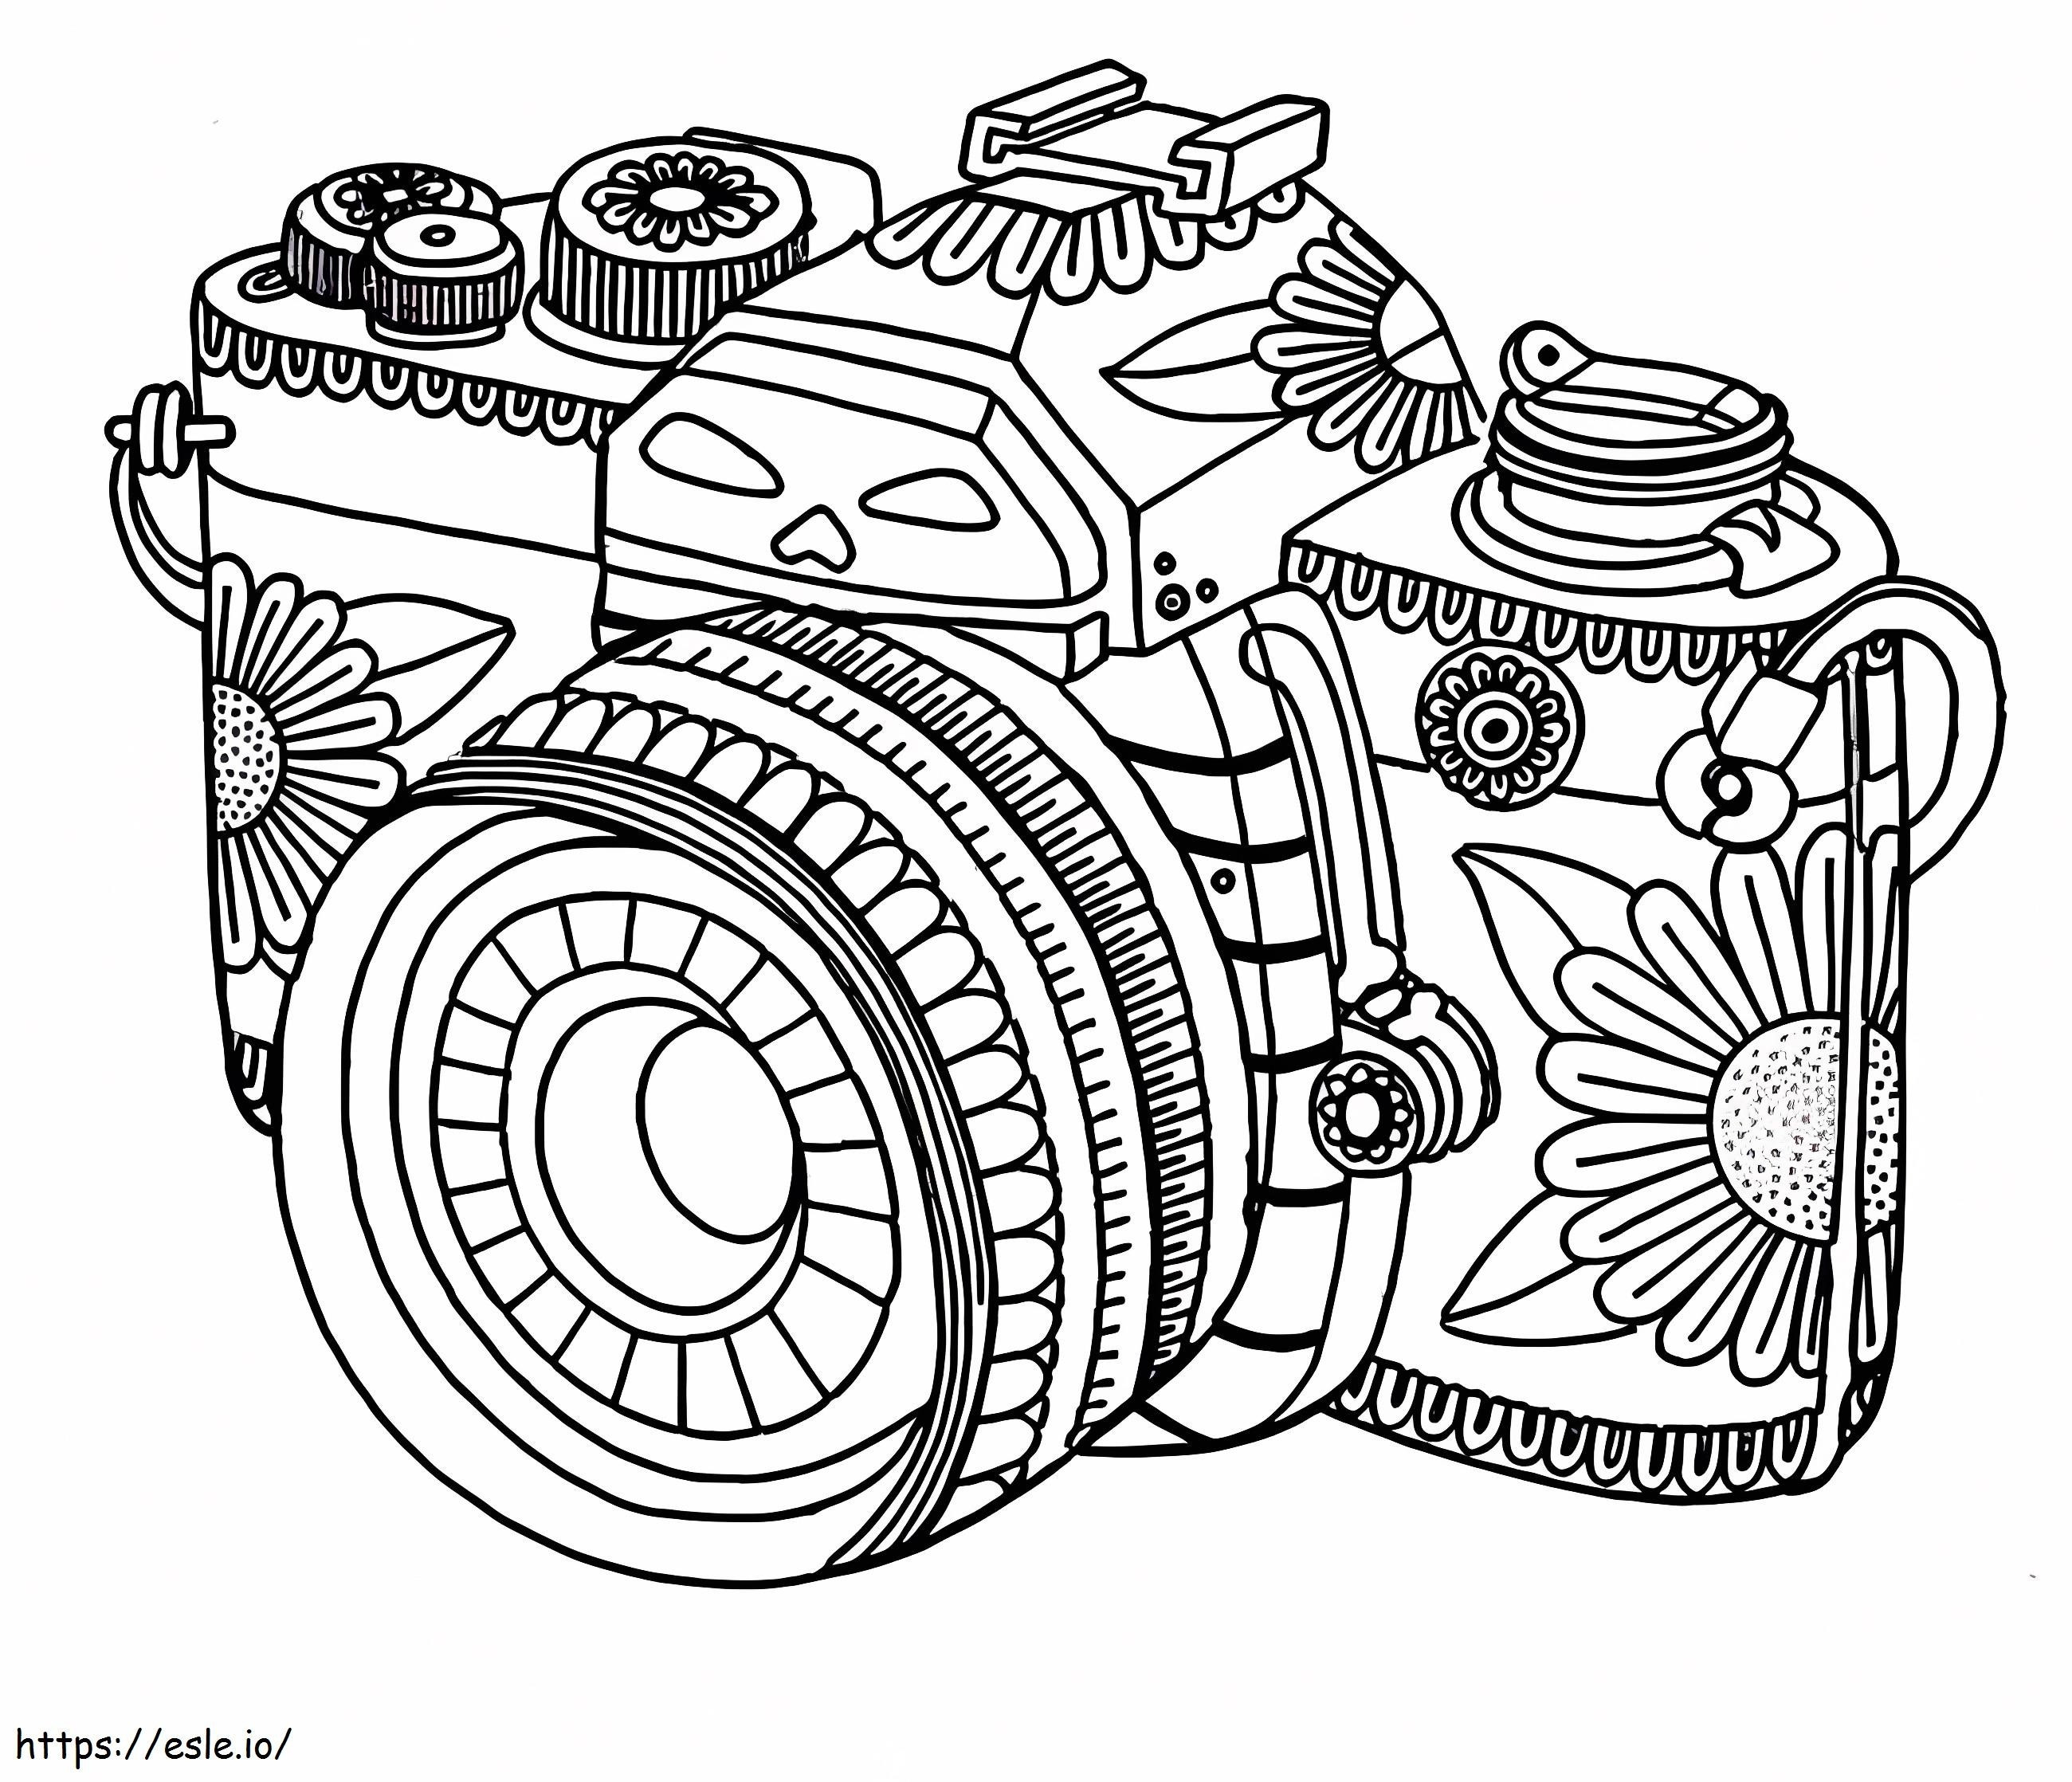 Leuke Mandala-camera kleurplaat kleurplaat